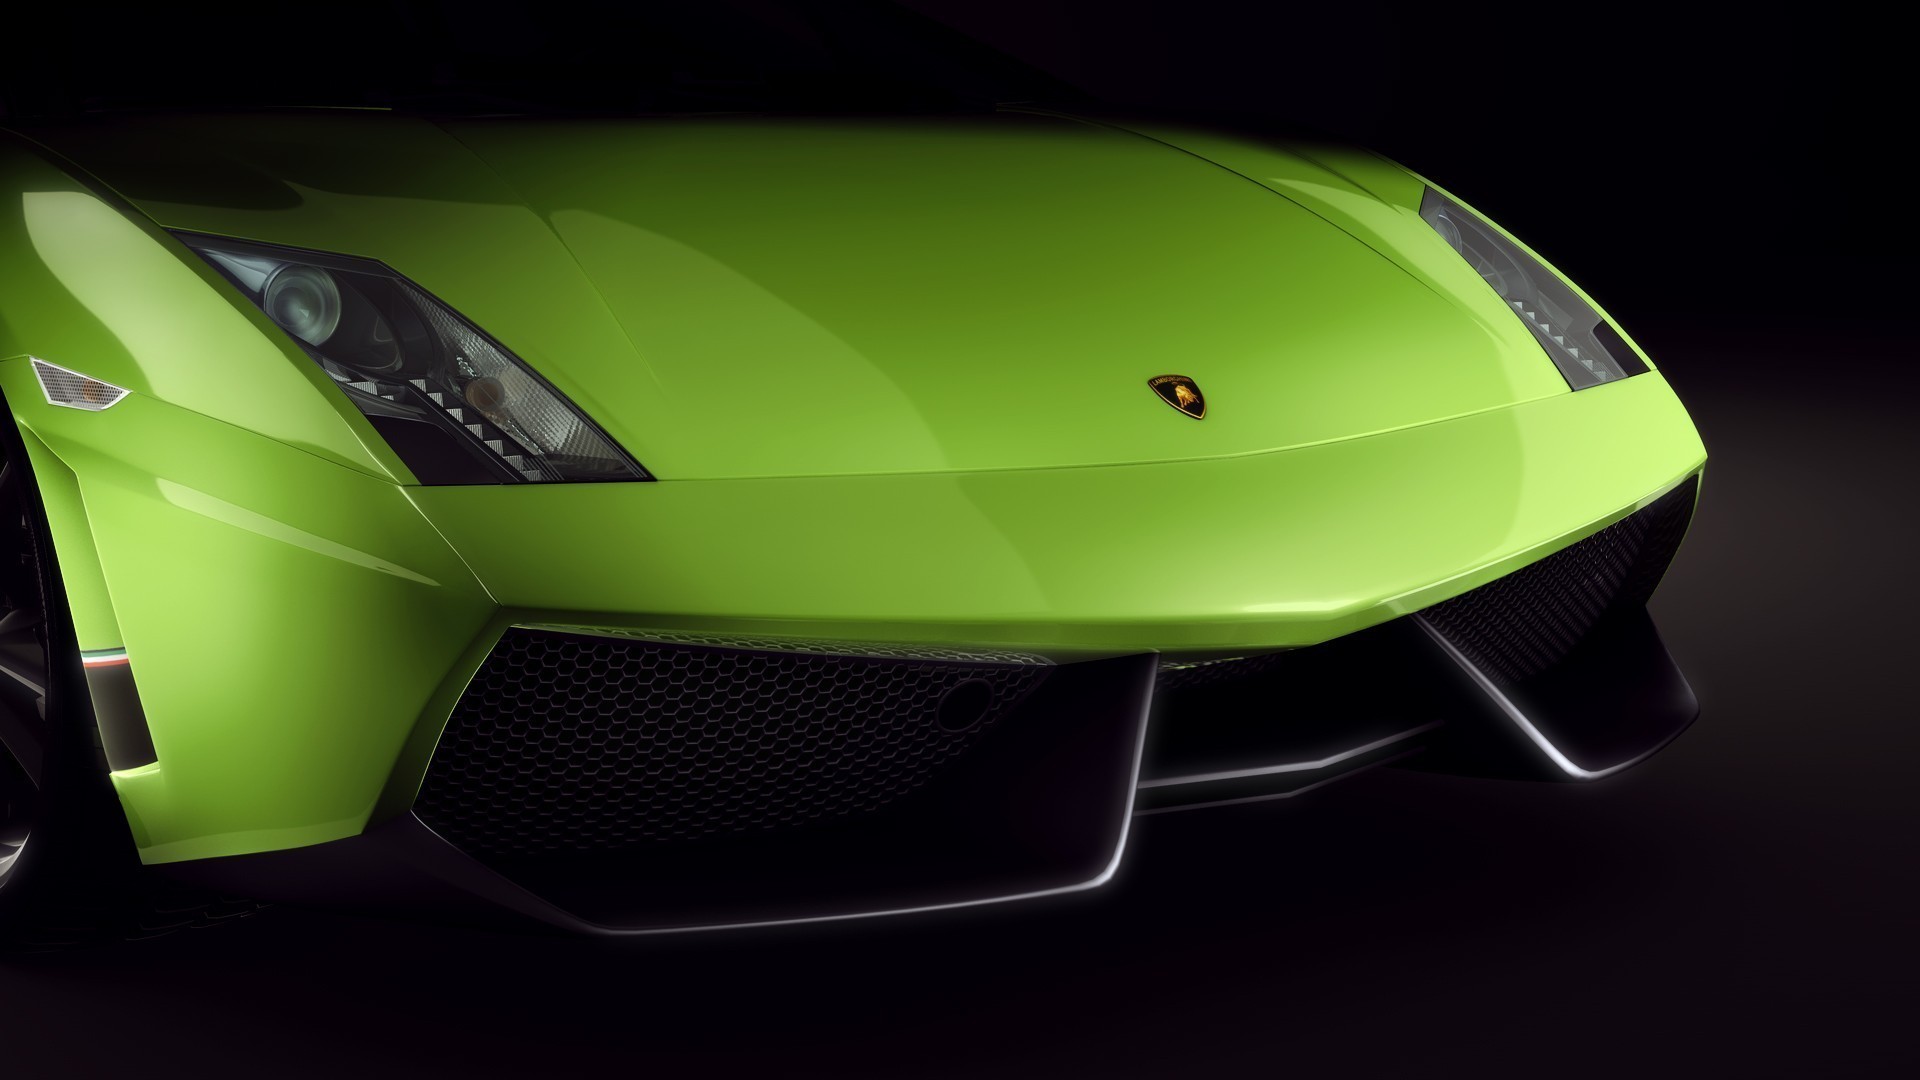 Lamborghini Gallardo, Green Cars, Car Wallpaper